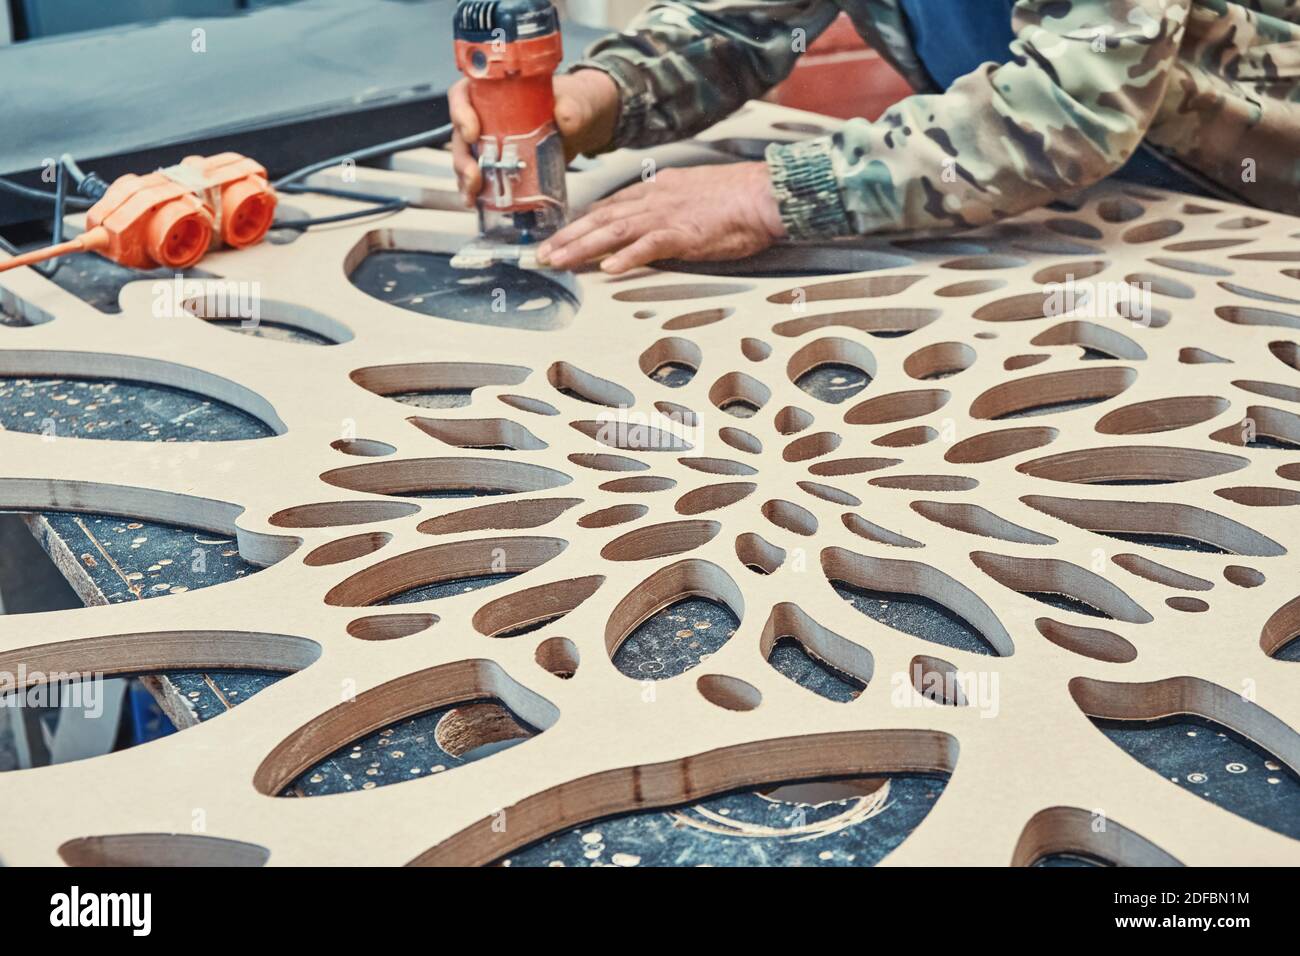 Dekorative Trennwand Herstellungsprozess. Tischlerfräsen Löcher in MDF mit  einer Hand elektrische Fräse Maschine. Dekorative Trennwand mit fl  Stockfotografie - Alamy